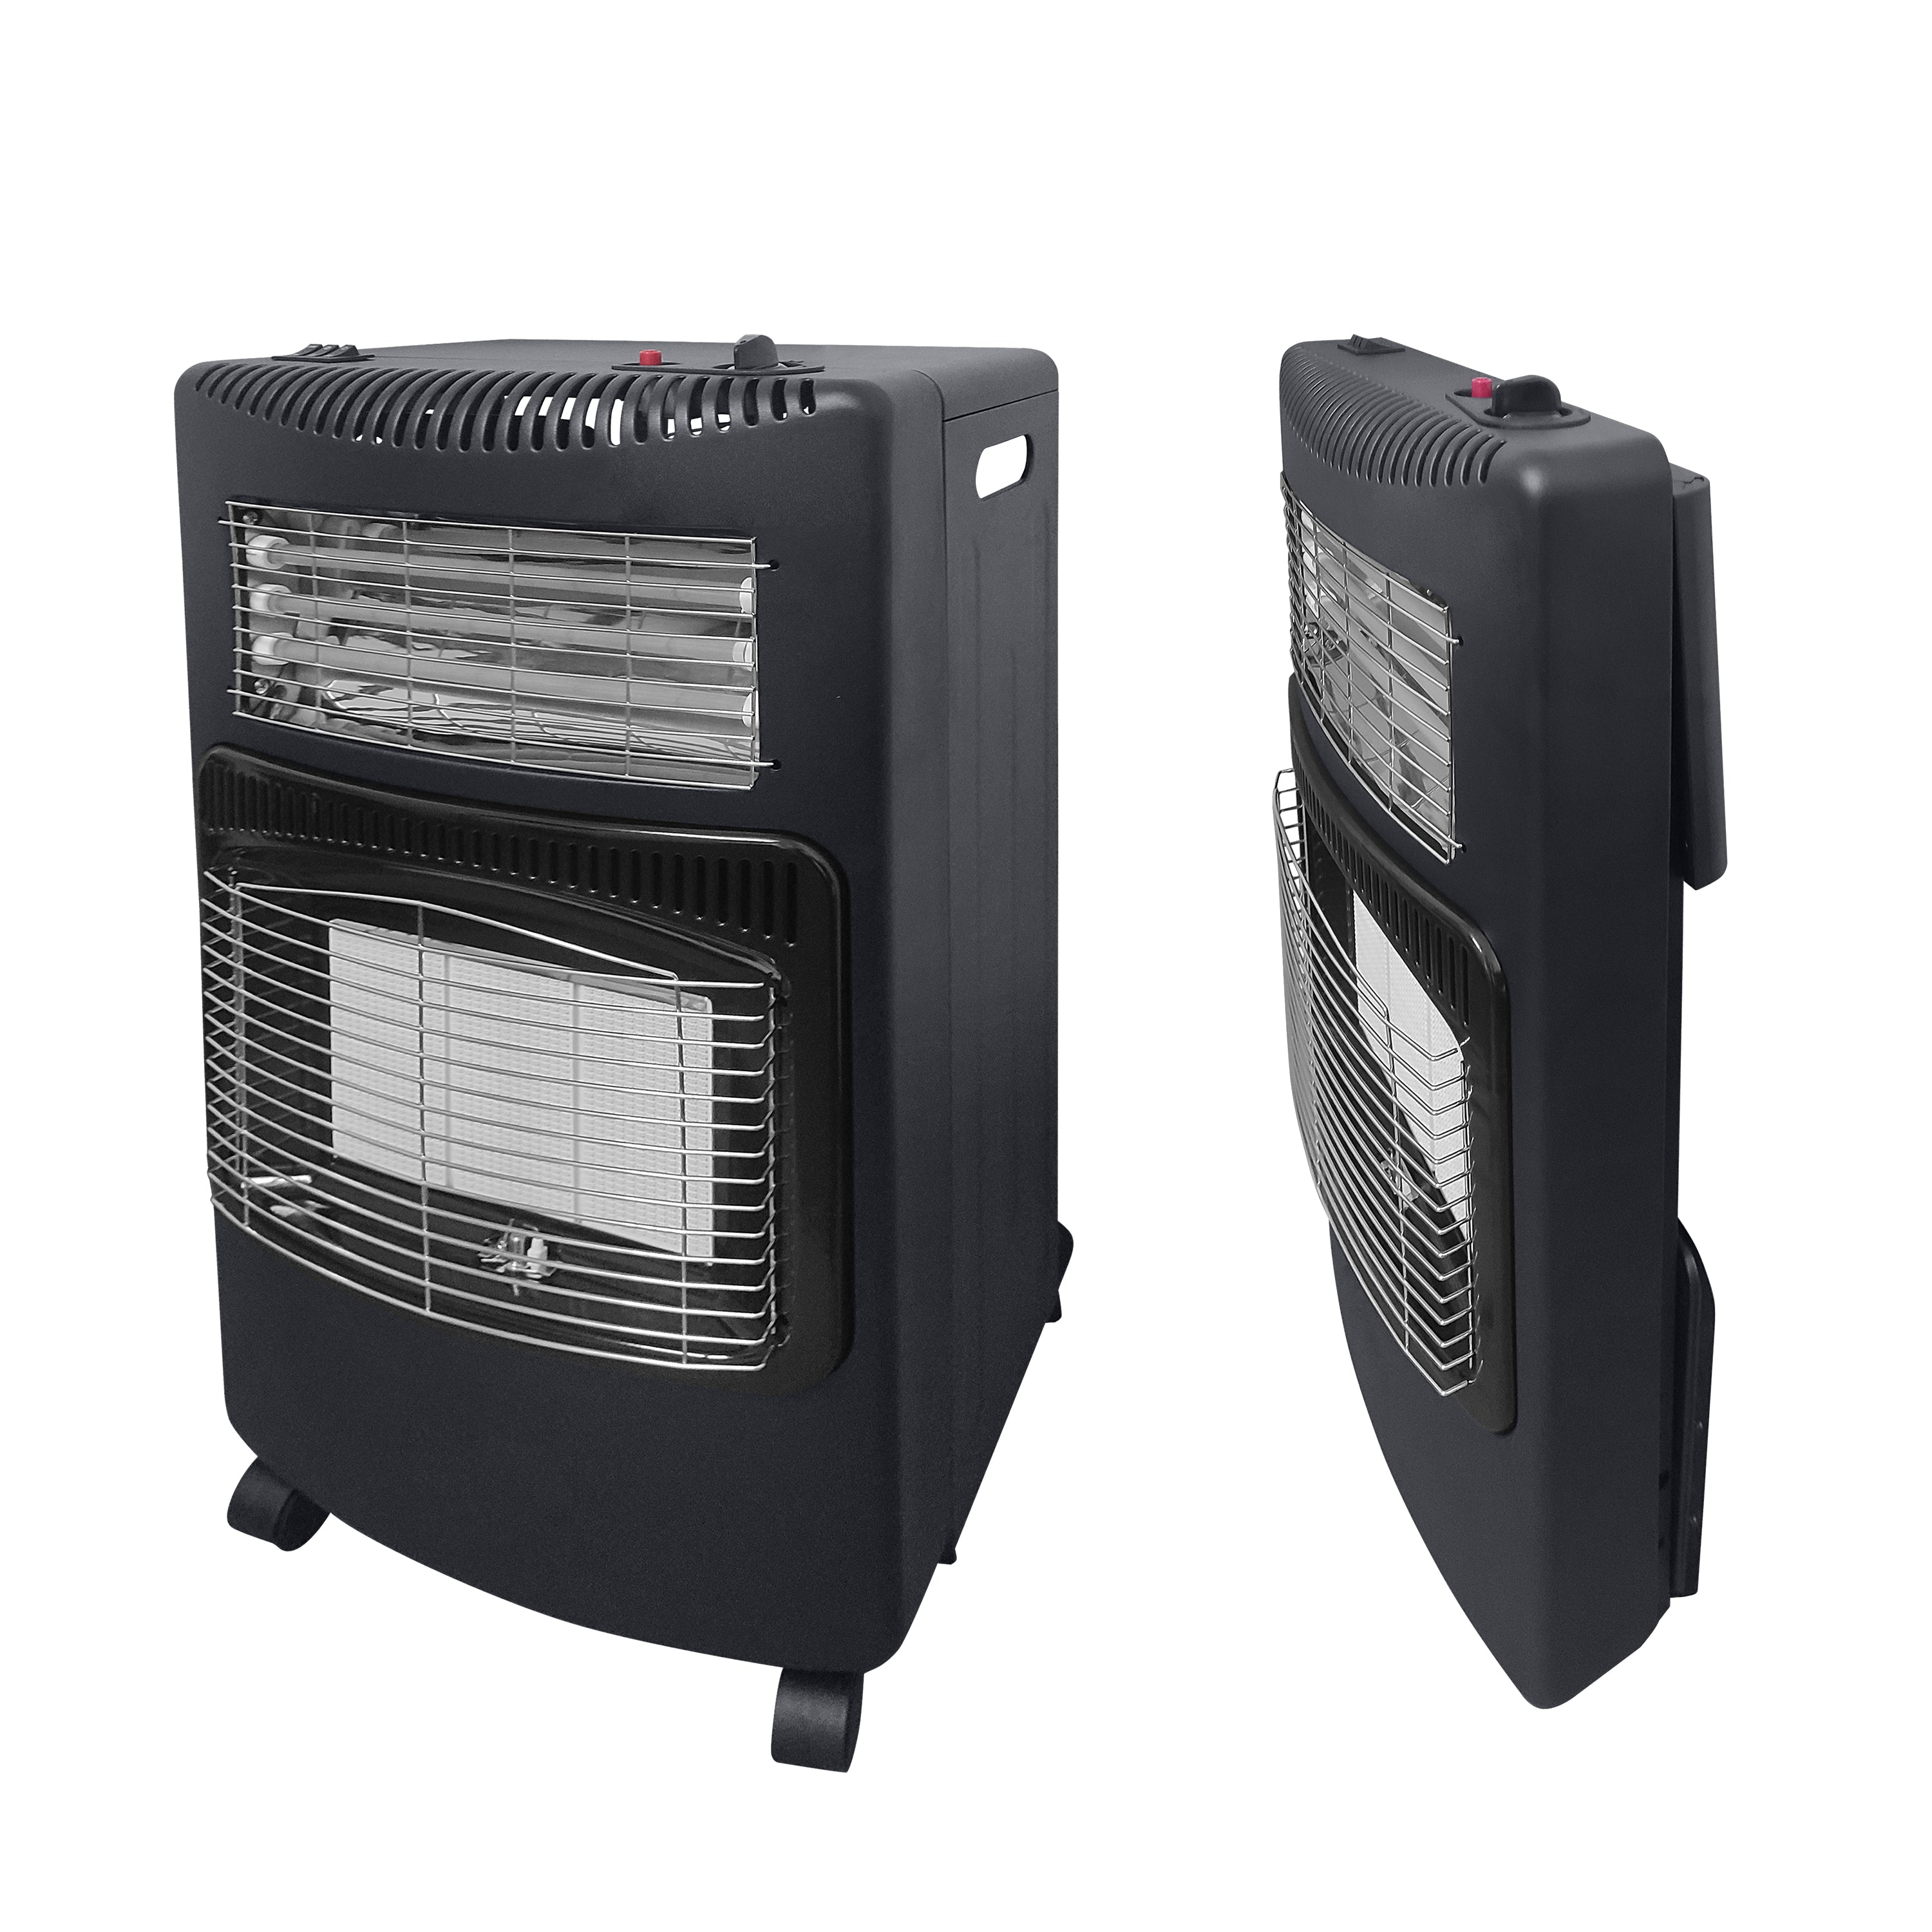 AMOS Portable Calor Gas & Electric Heater